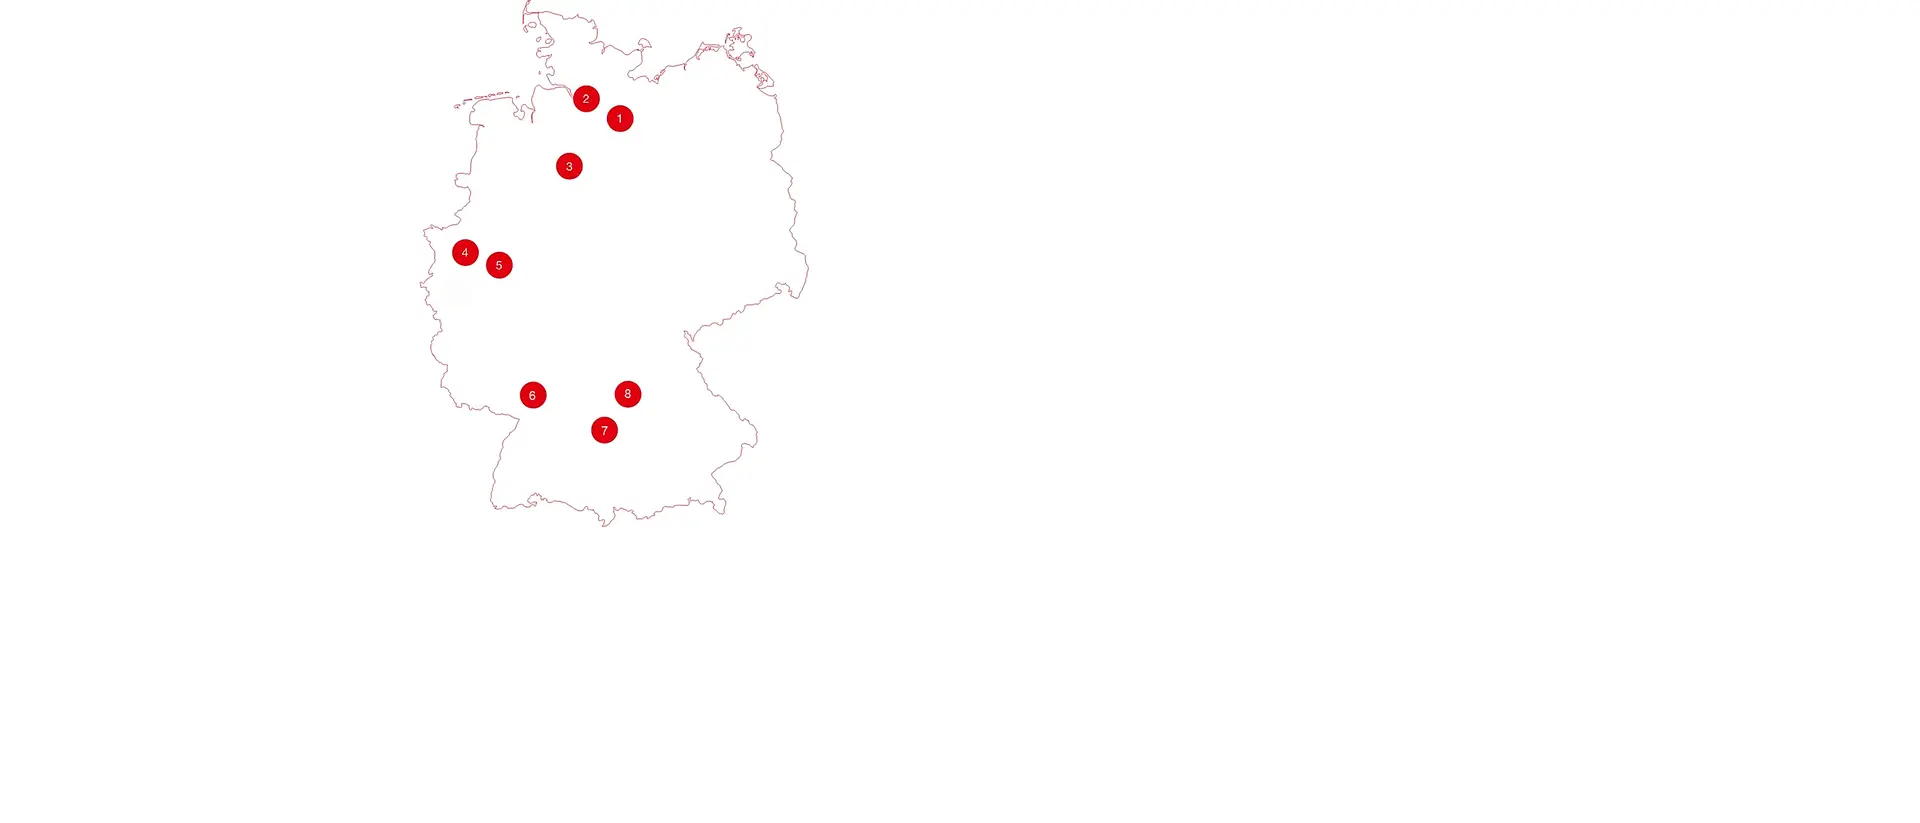 Eine Karte von Deutschland mit nummerierten Icons, die die unterschiedlichen Henkel-Standorte anzeigen. 